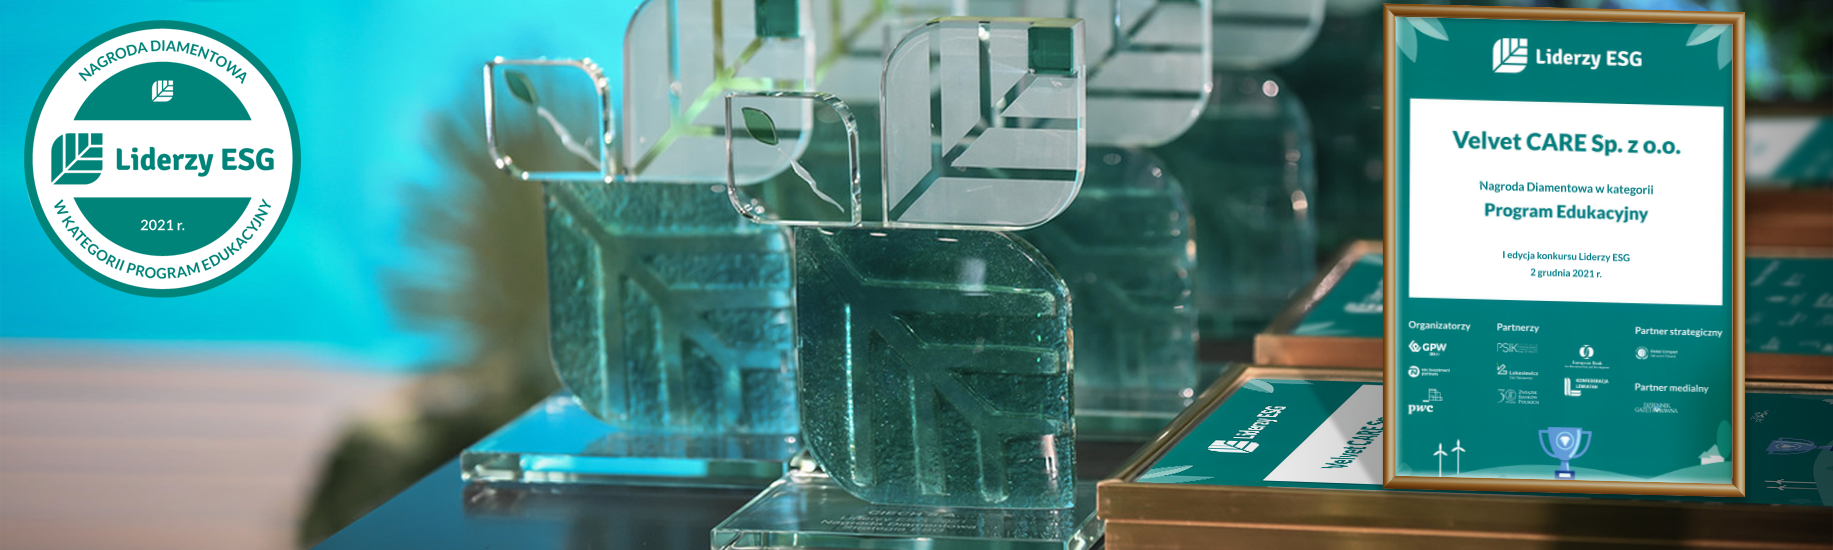 Konkurs „Liderzy ESG” rozstrzygnięty – nasza firma otrzymała Nagrodę Diamentową w kategorii Program Edukacyjny!